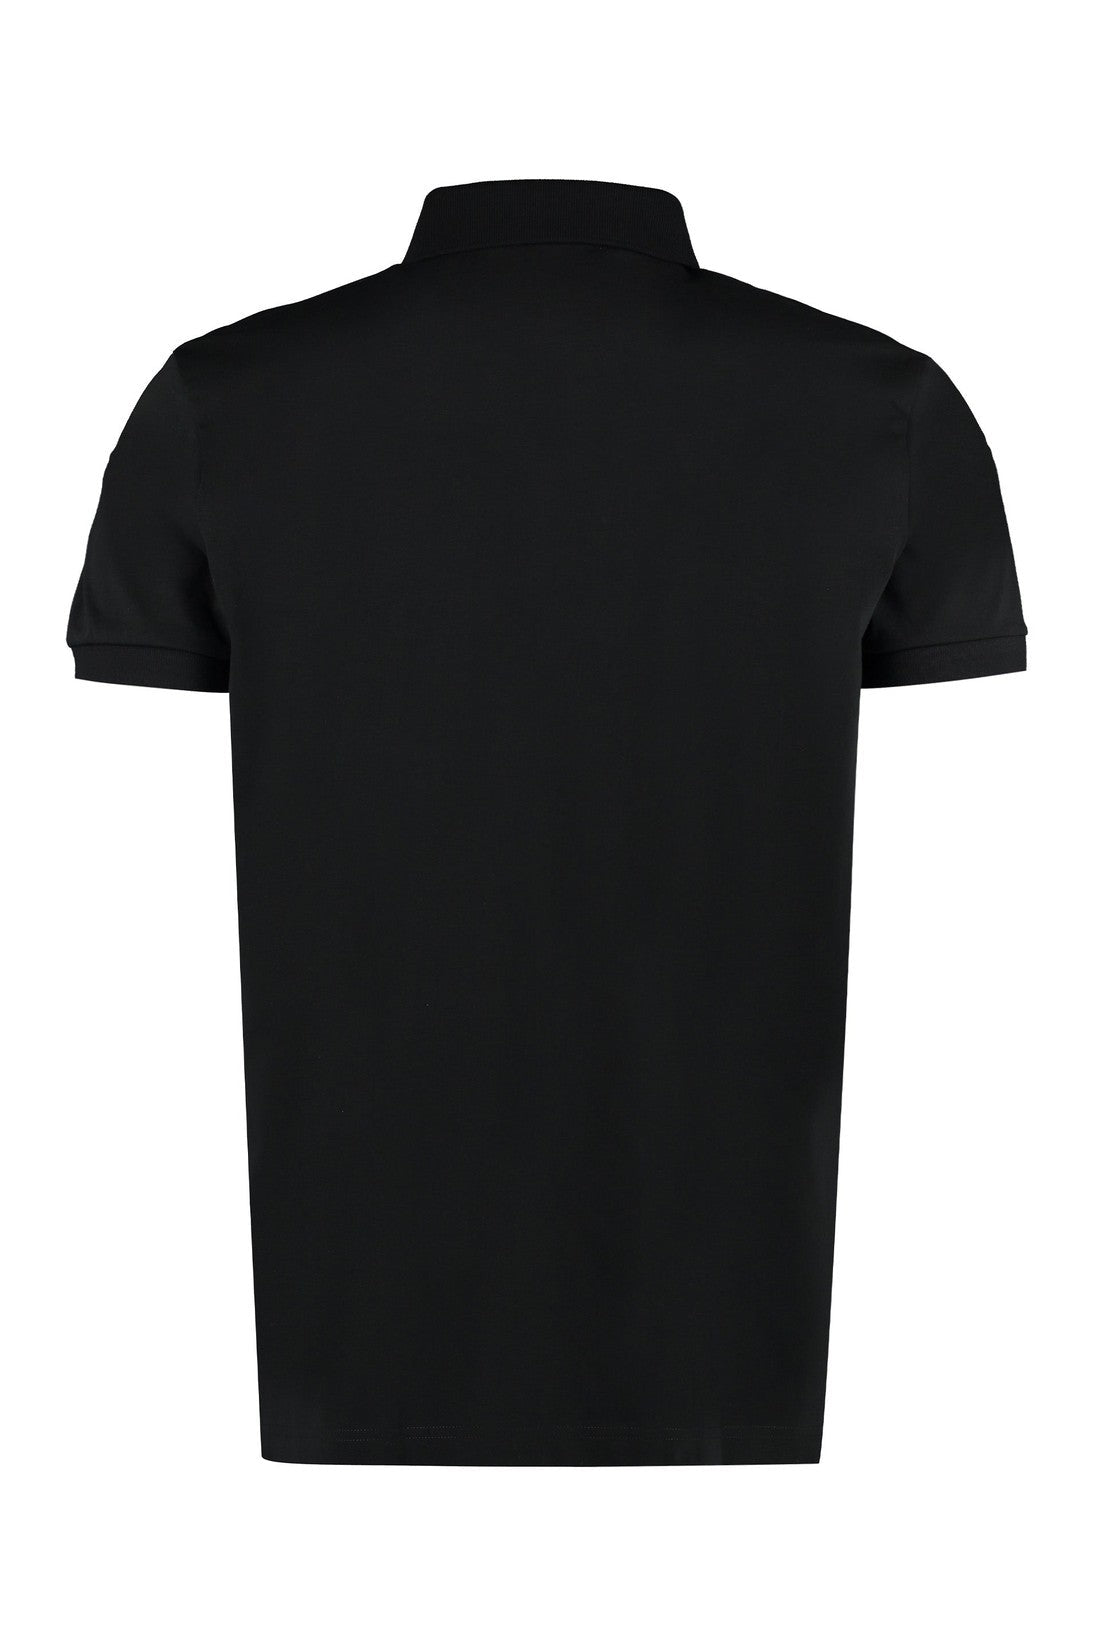 BOSS-OUTLET-SALE-Logo print cotton polo shirt-ARCHIVIST